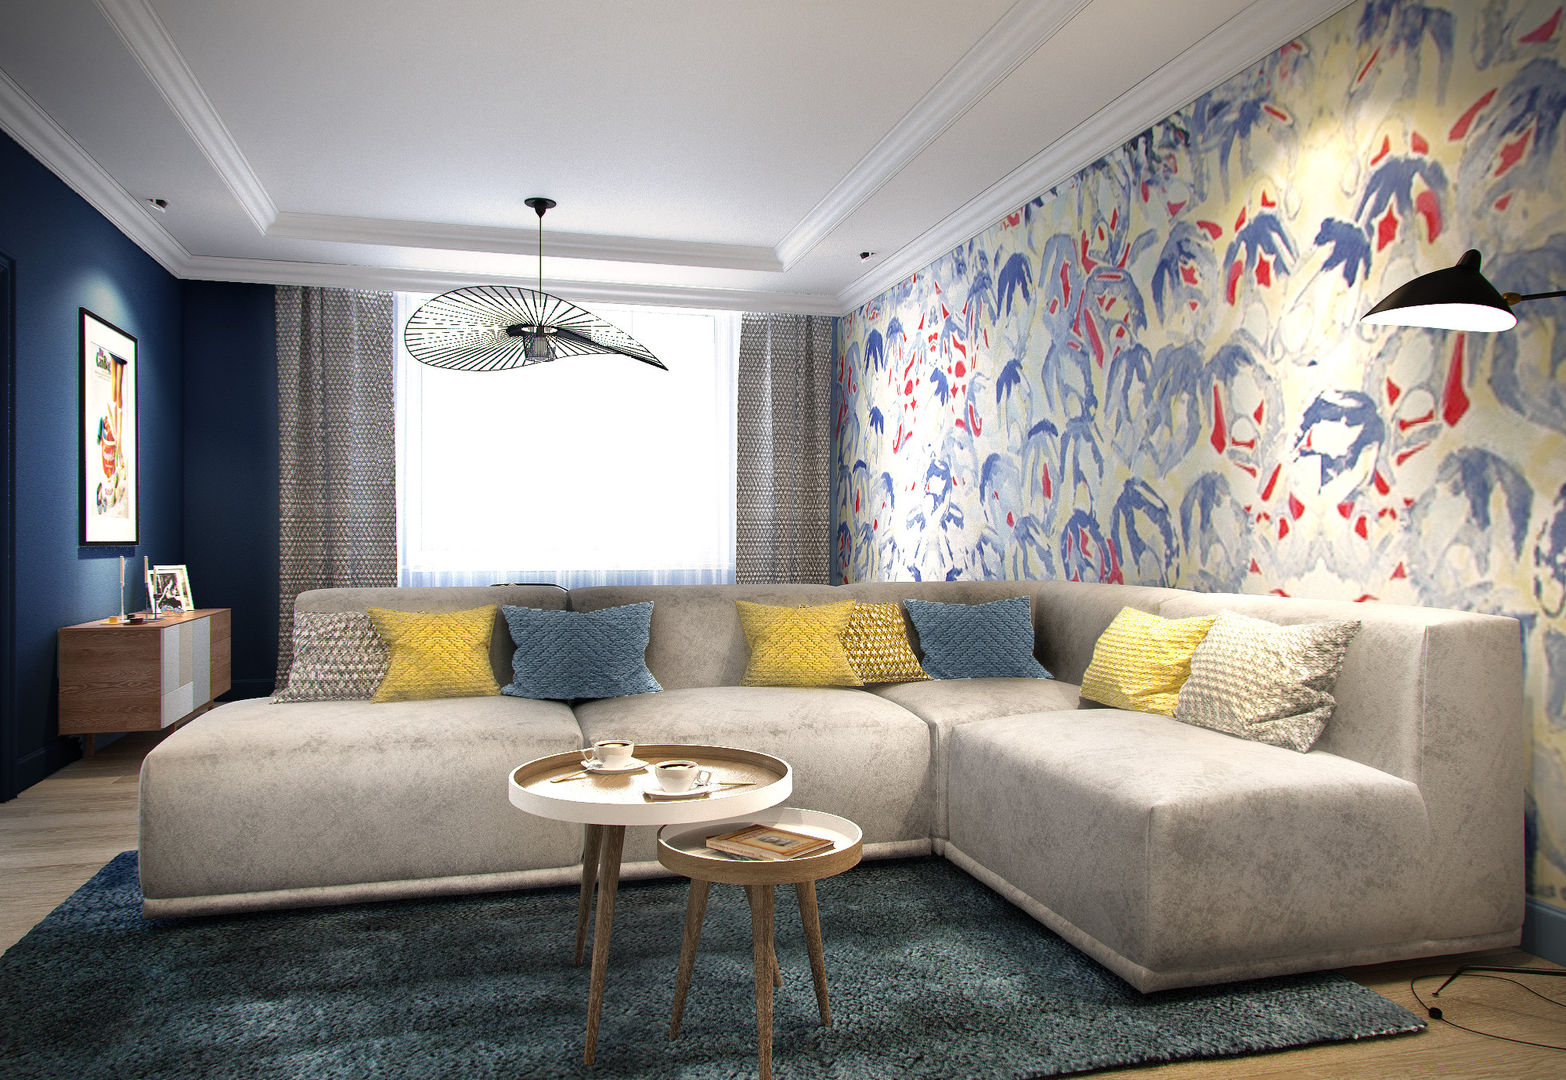 Трехкомнатная квартира для молодой семьи в современном стиле с элементами поп-арта, Studio 25 Studio 25 Salones escandinavos